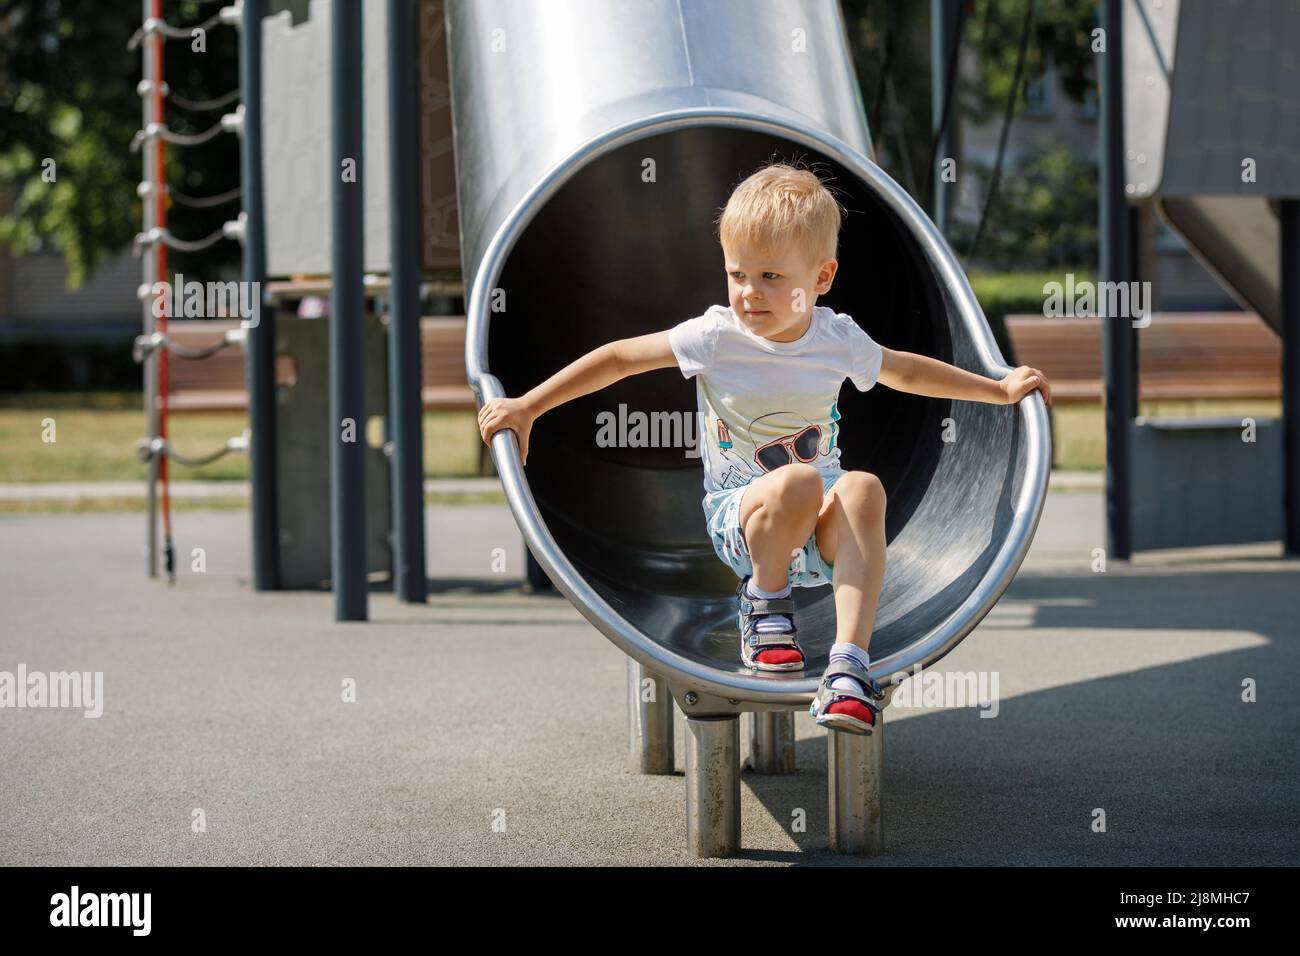 Joyful kid playing in tube slide on children's playground. Stock Photo